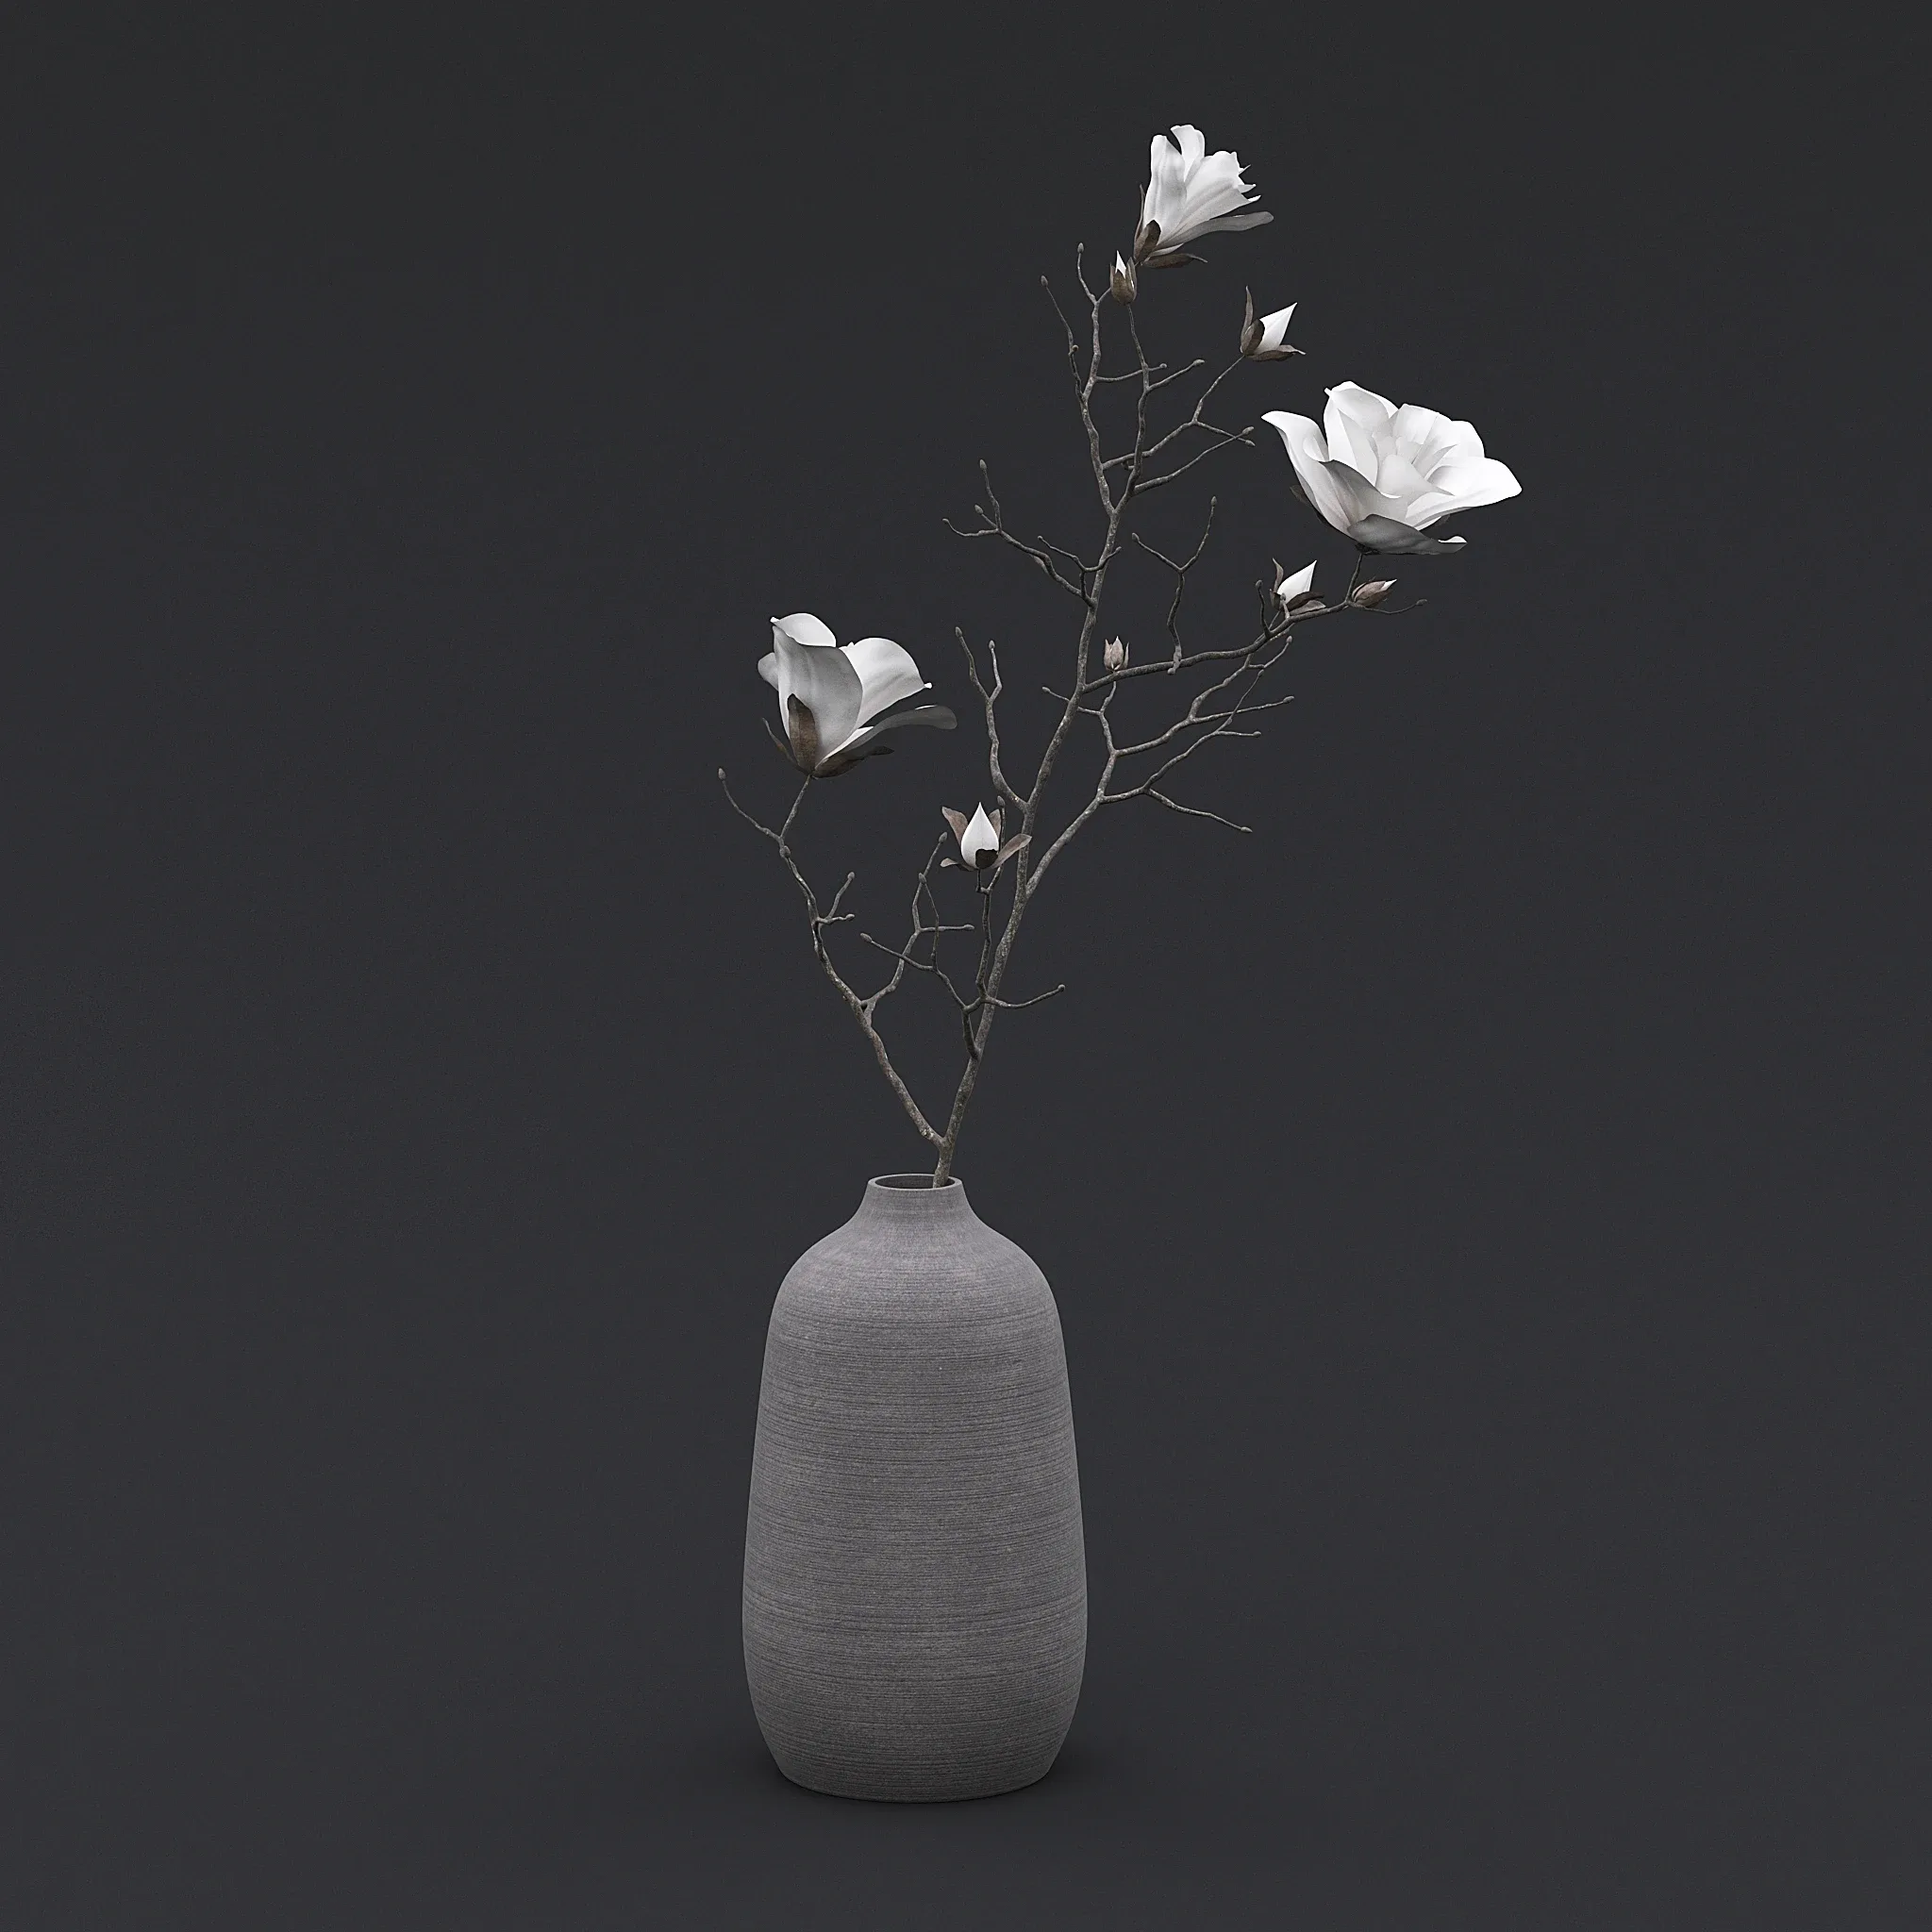 Dry Flowers in Vase I